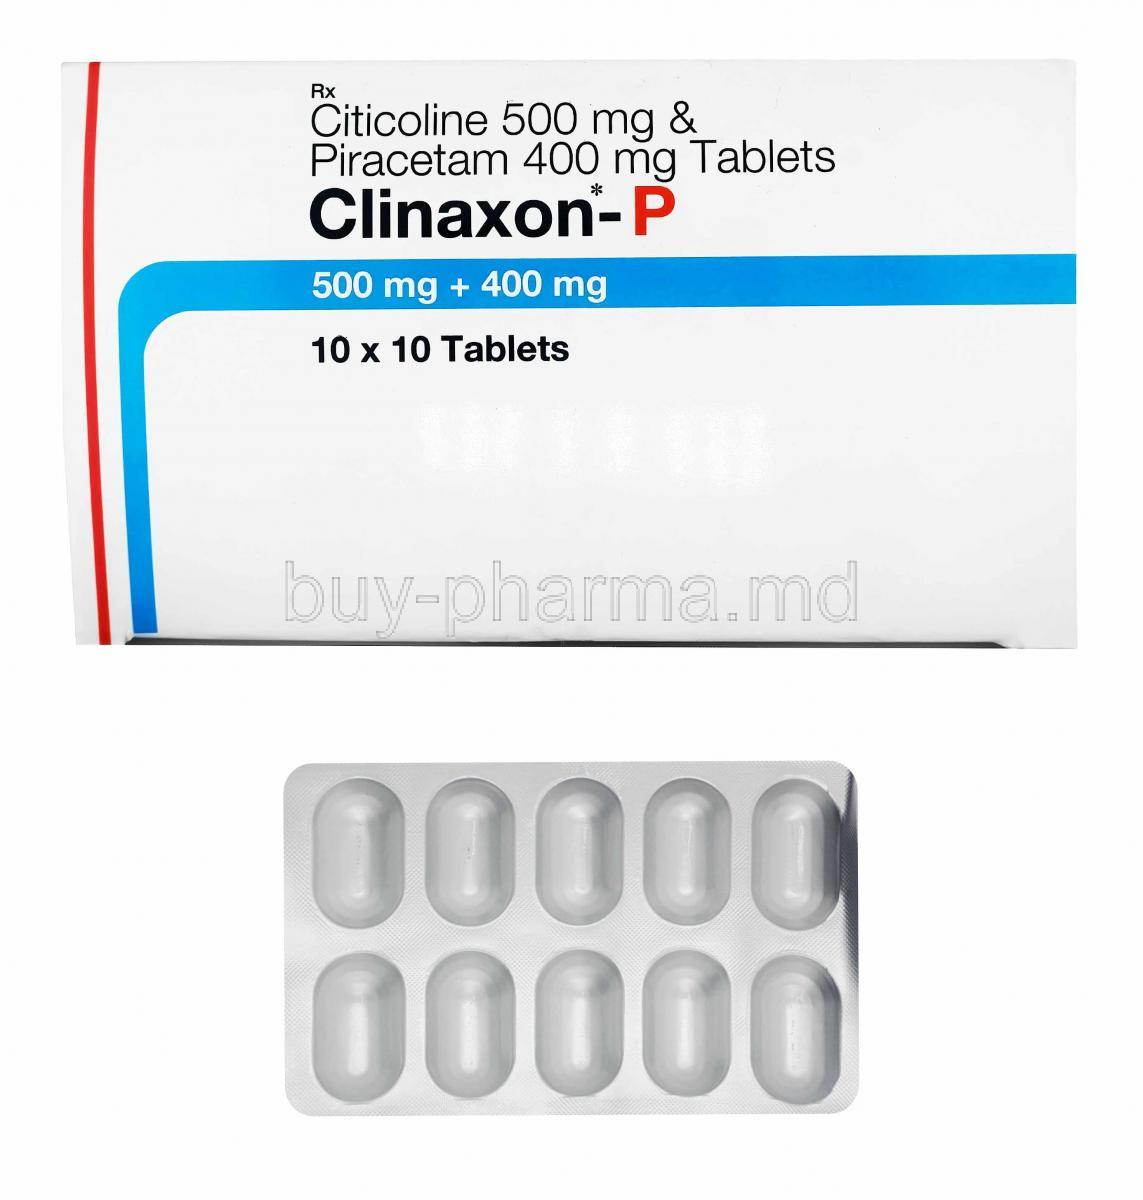 Clinaxon-P, Citicoline and Piracetam box and tablets